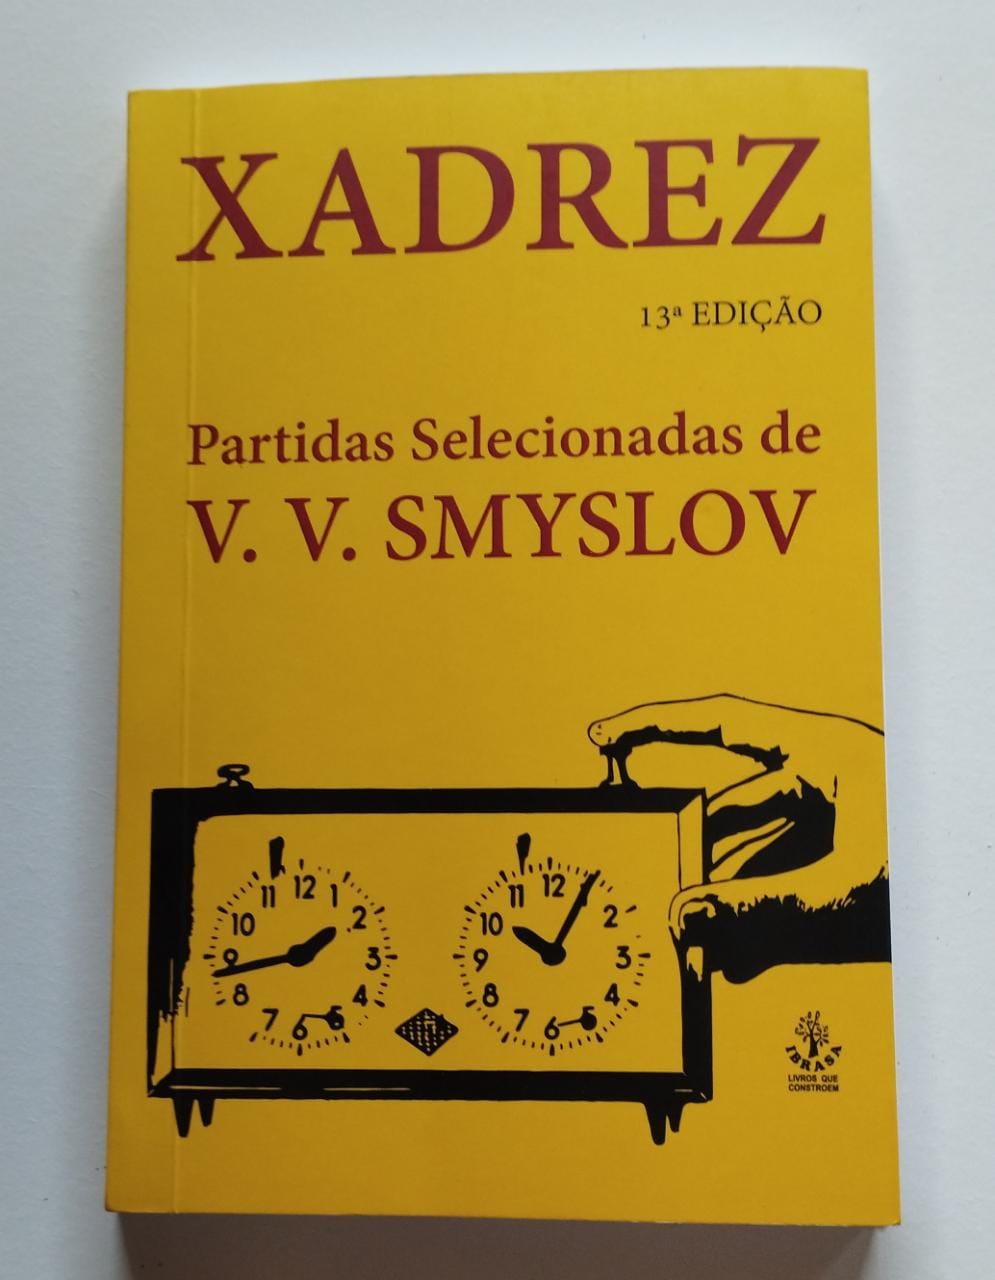 Livro Partidas Selecionadas Vasily Smyslov [Sob Encomenda: Envio em 25  dias] - A lojinha de xadrez que virou mania nacional!